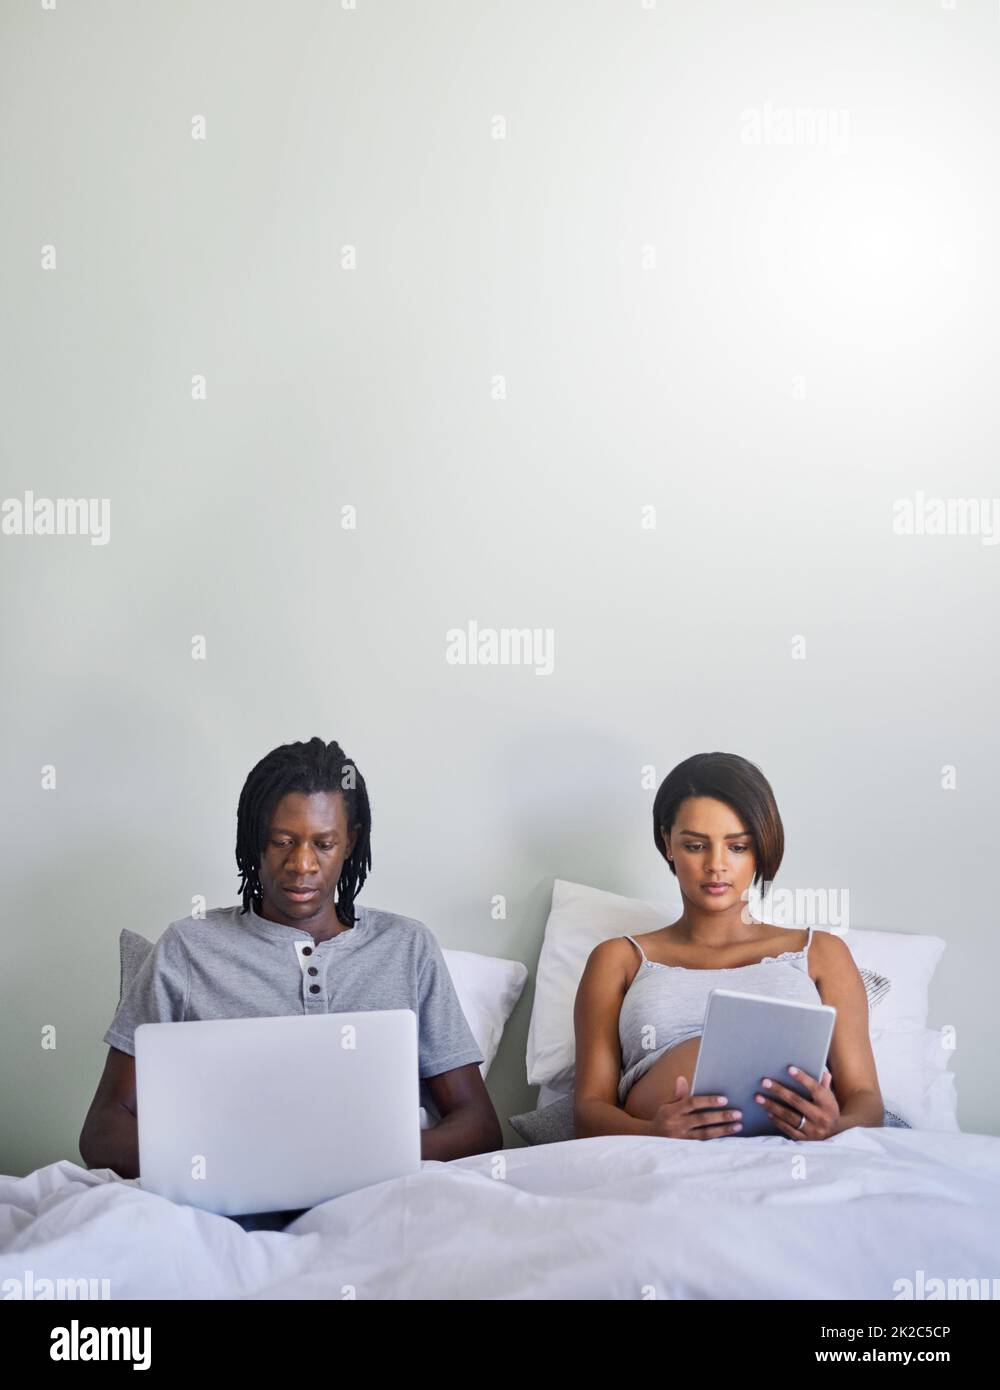 Ne croyez pas tout ce que vous lisez en ligne. Photo d'un couple assis dans le lit tout en utilisant des appareils sans fil. Banque D'Images